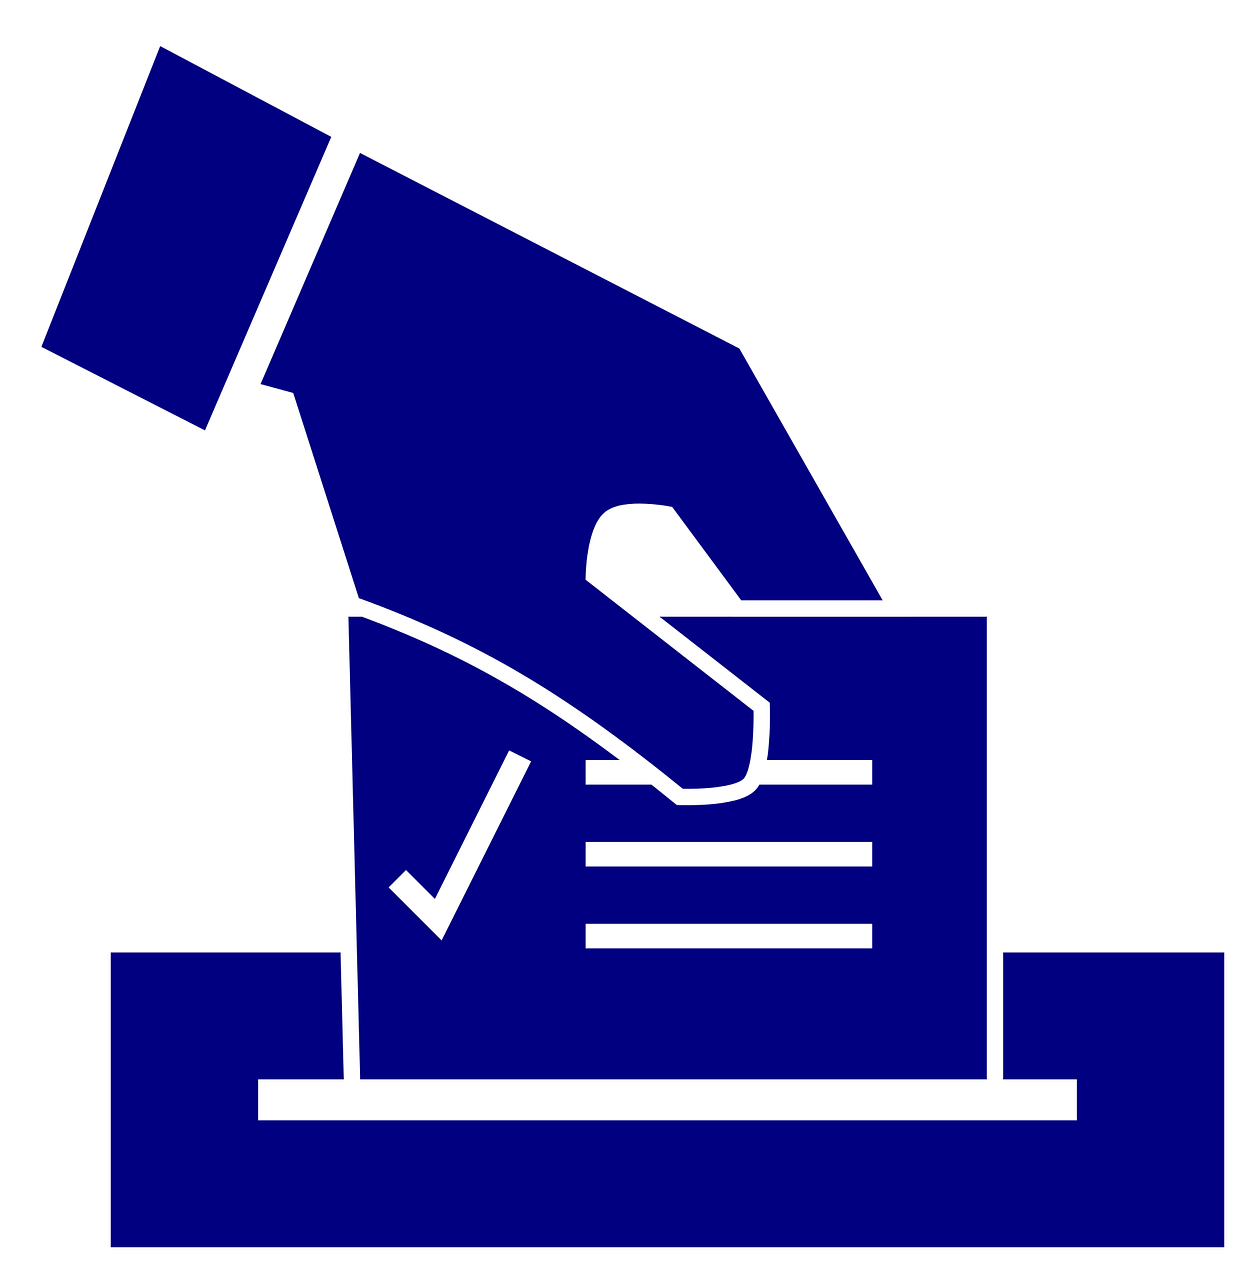 Elecciones al Parlamento Vasco: listas electorales expuestas para presentación de reclamaciones desde el 4 al 11 de marzo